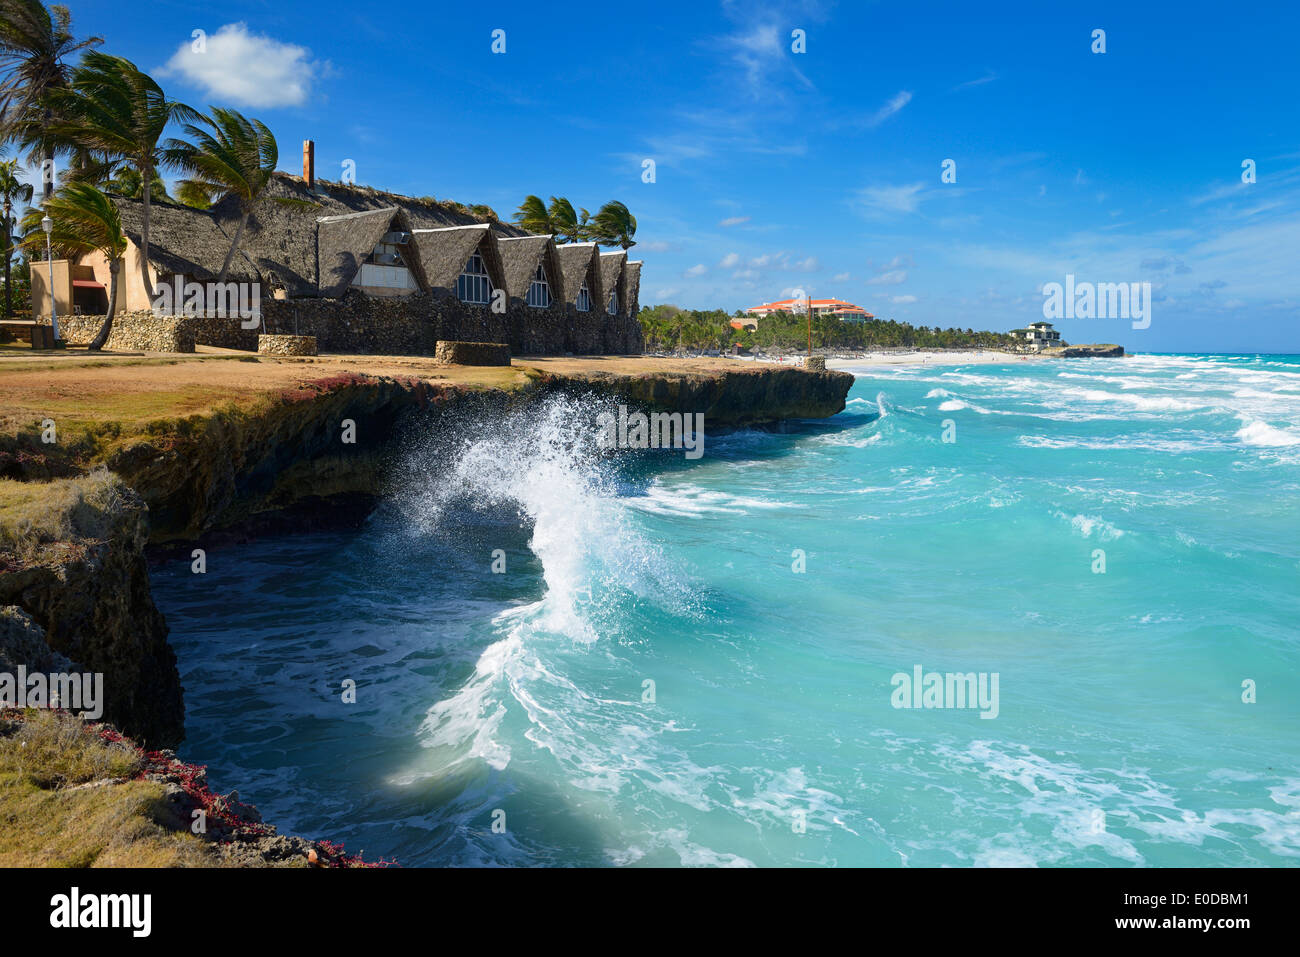 Rebote de onda off shore de rocas de lava causando splash en alto viento en varadero beach resort Foto de stock